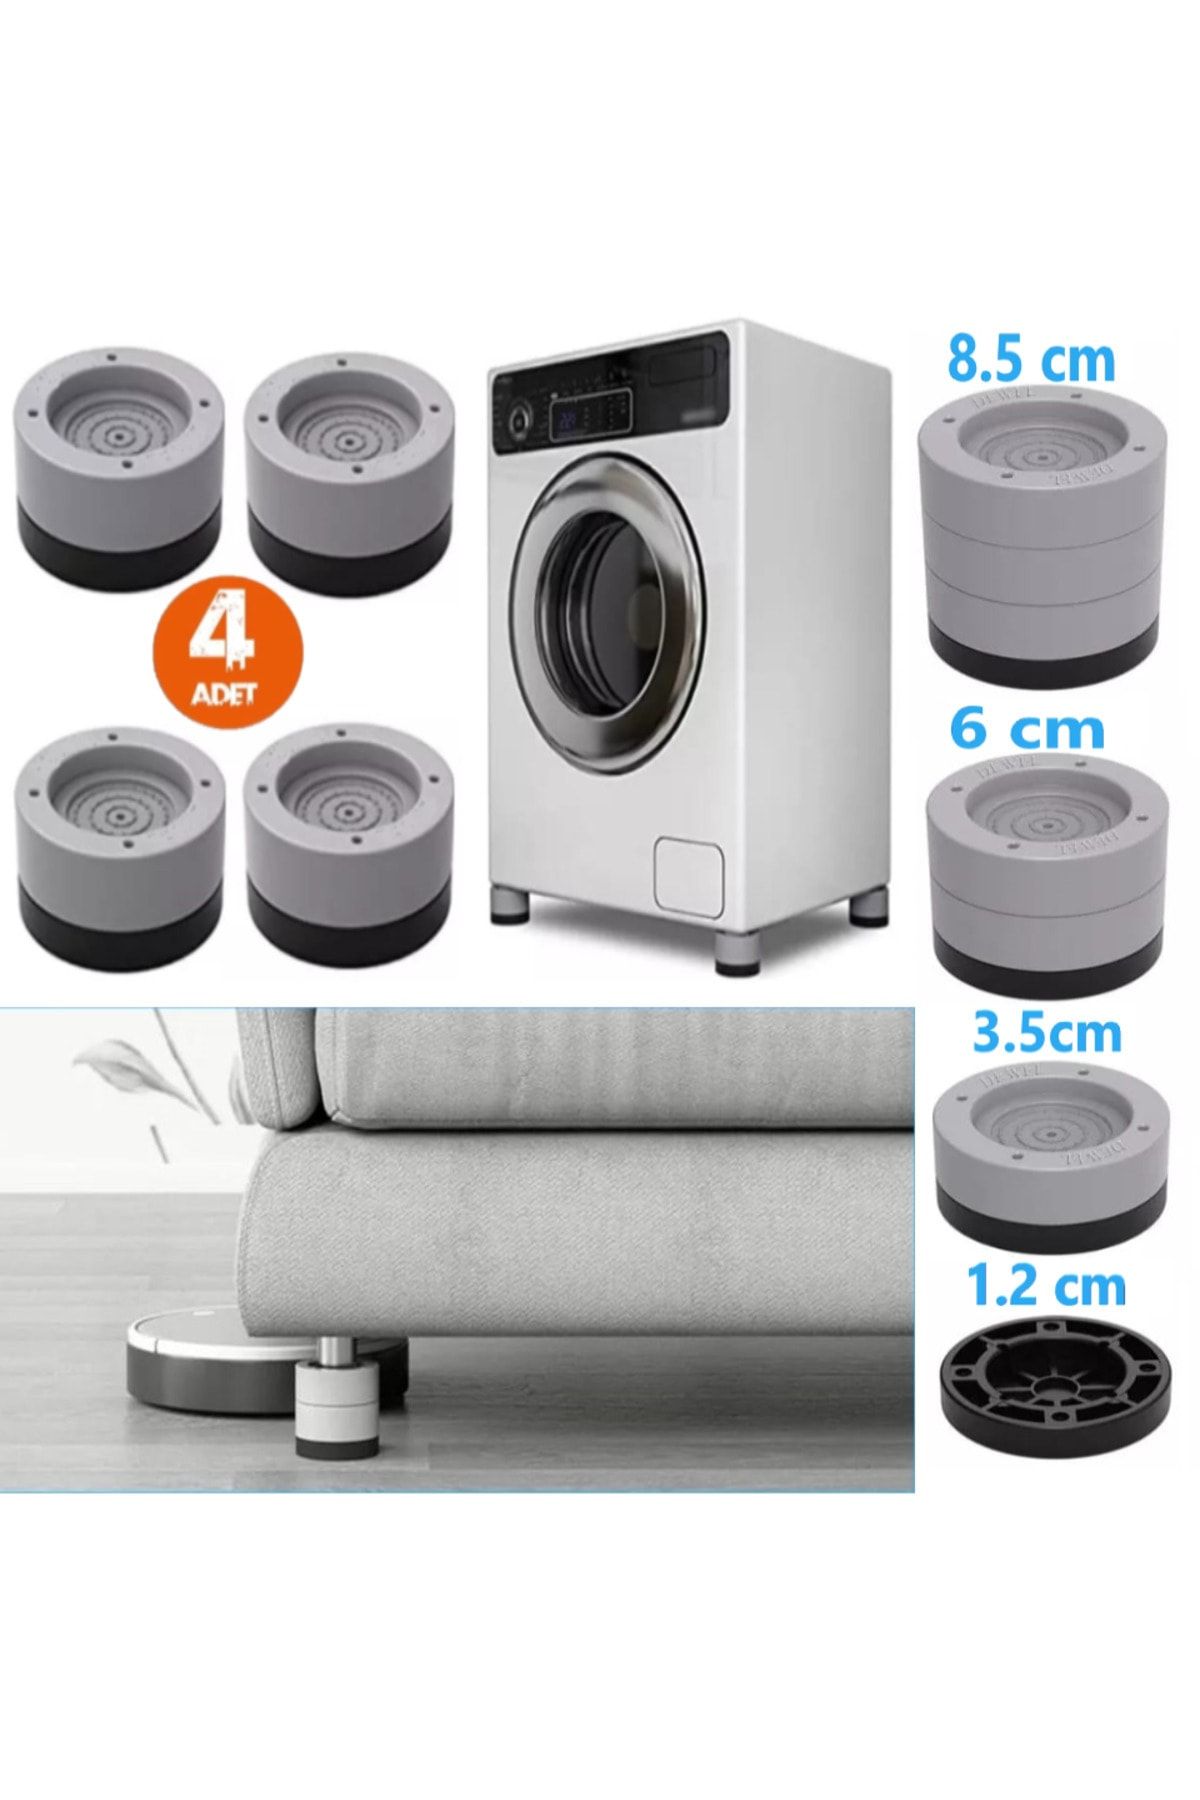 TİNEKE Beyaz Eşya Ayağı Çamaşır Makinesi Mobilya Titreşim Önleyici Kaydırmaz Ve 6 Cm Yükseltici 4 Lü Set